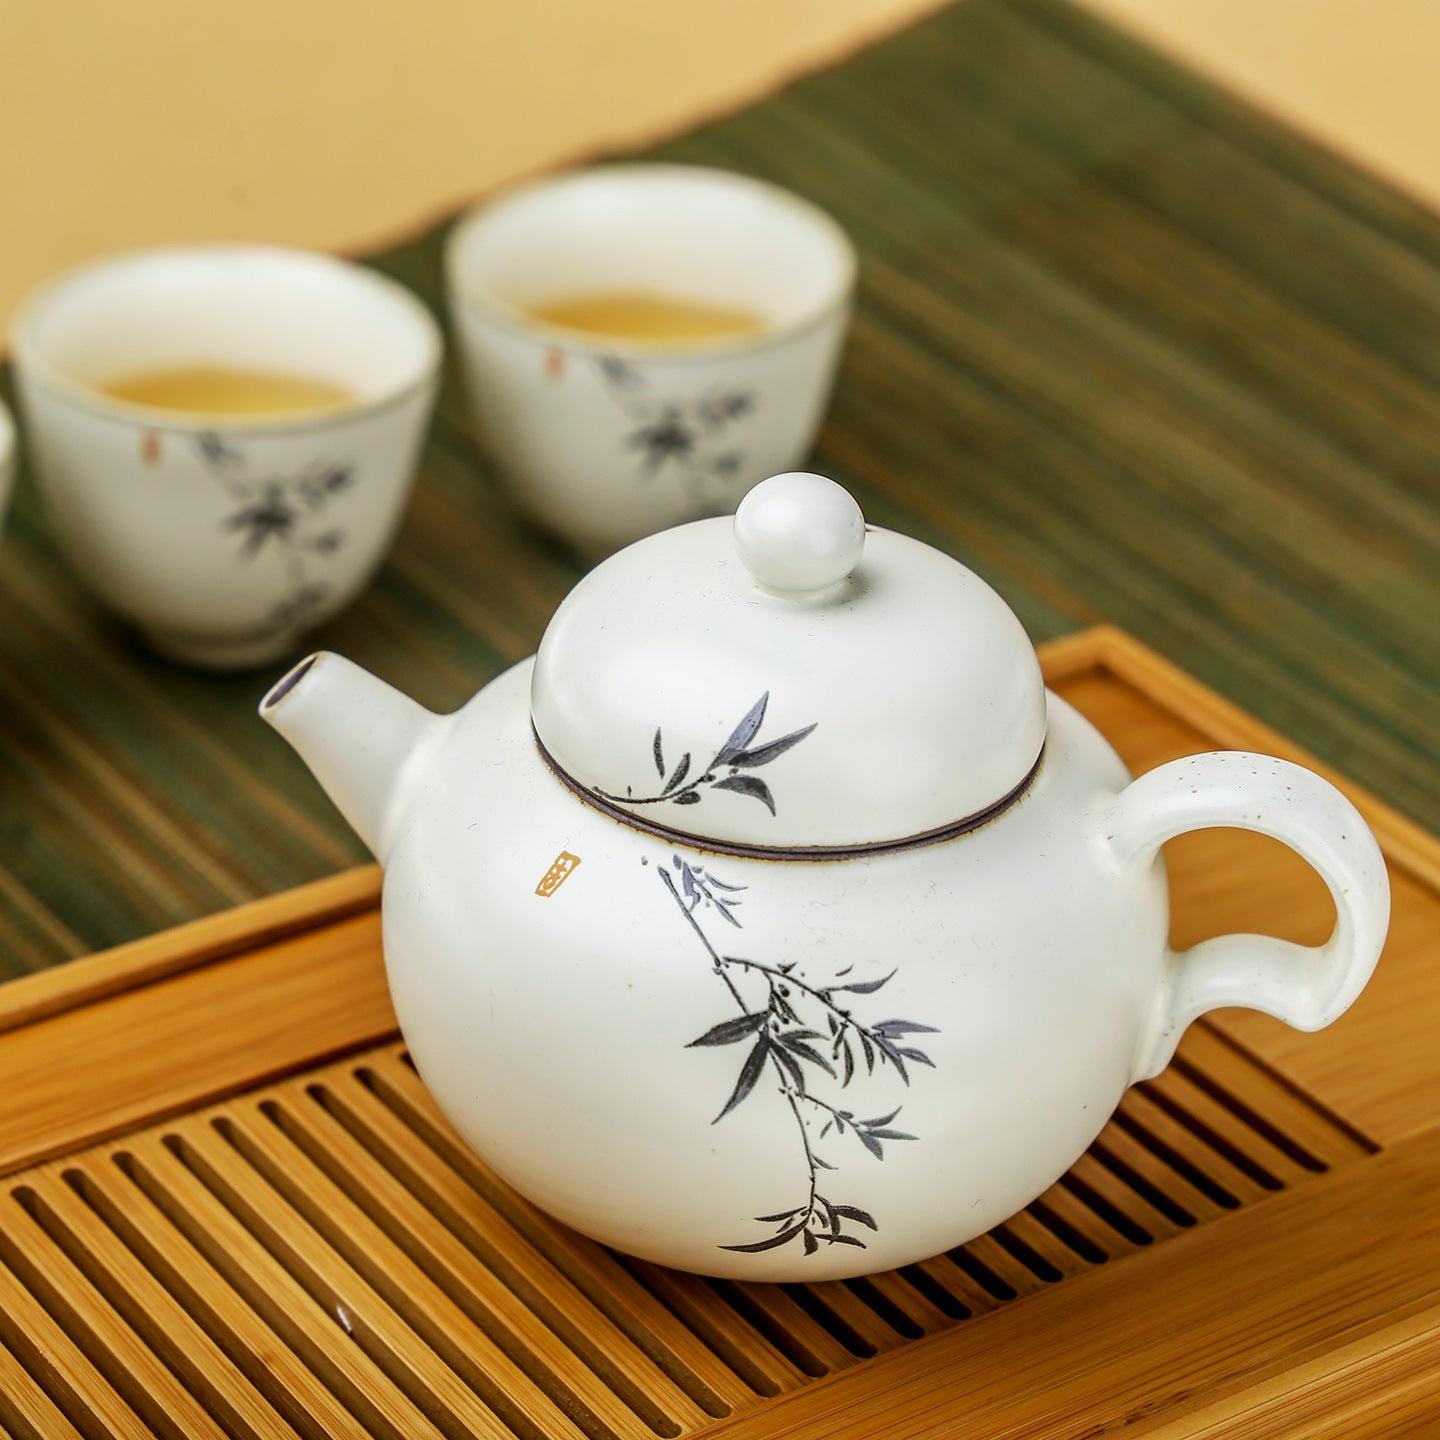 https://www.eilong.com/cdn/shop/products/chinese-pottery-teapot-art-yellow-glaze-bamboo-02.jpg?v=1654826105